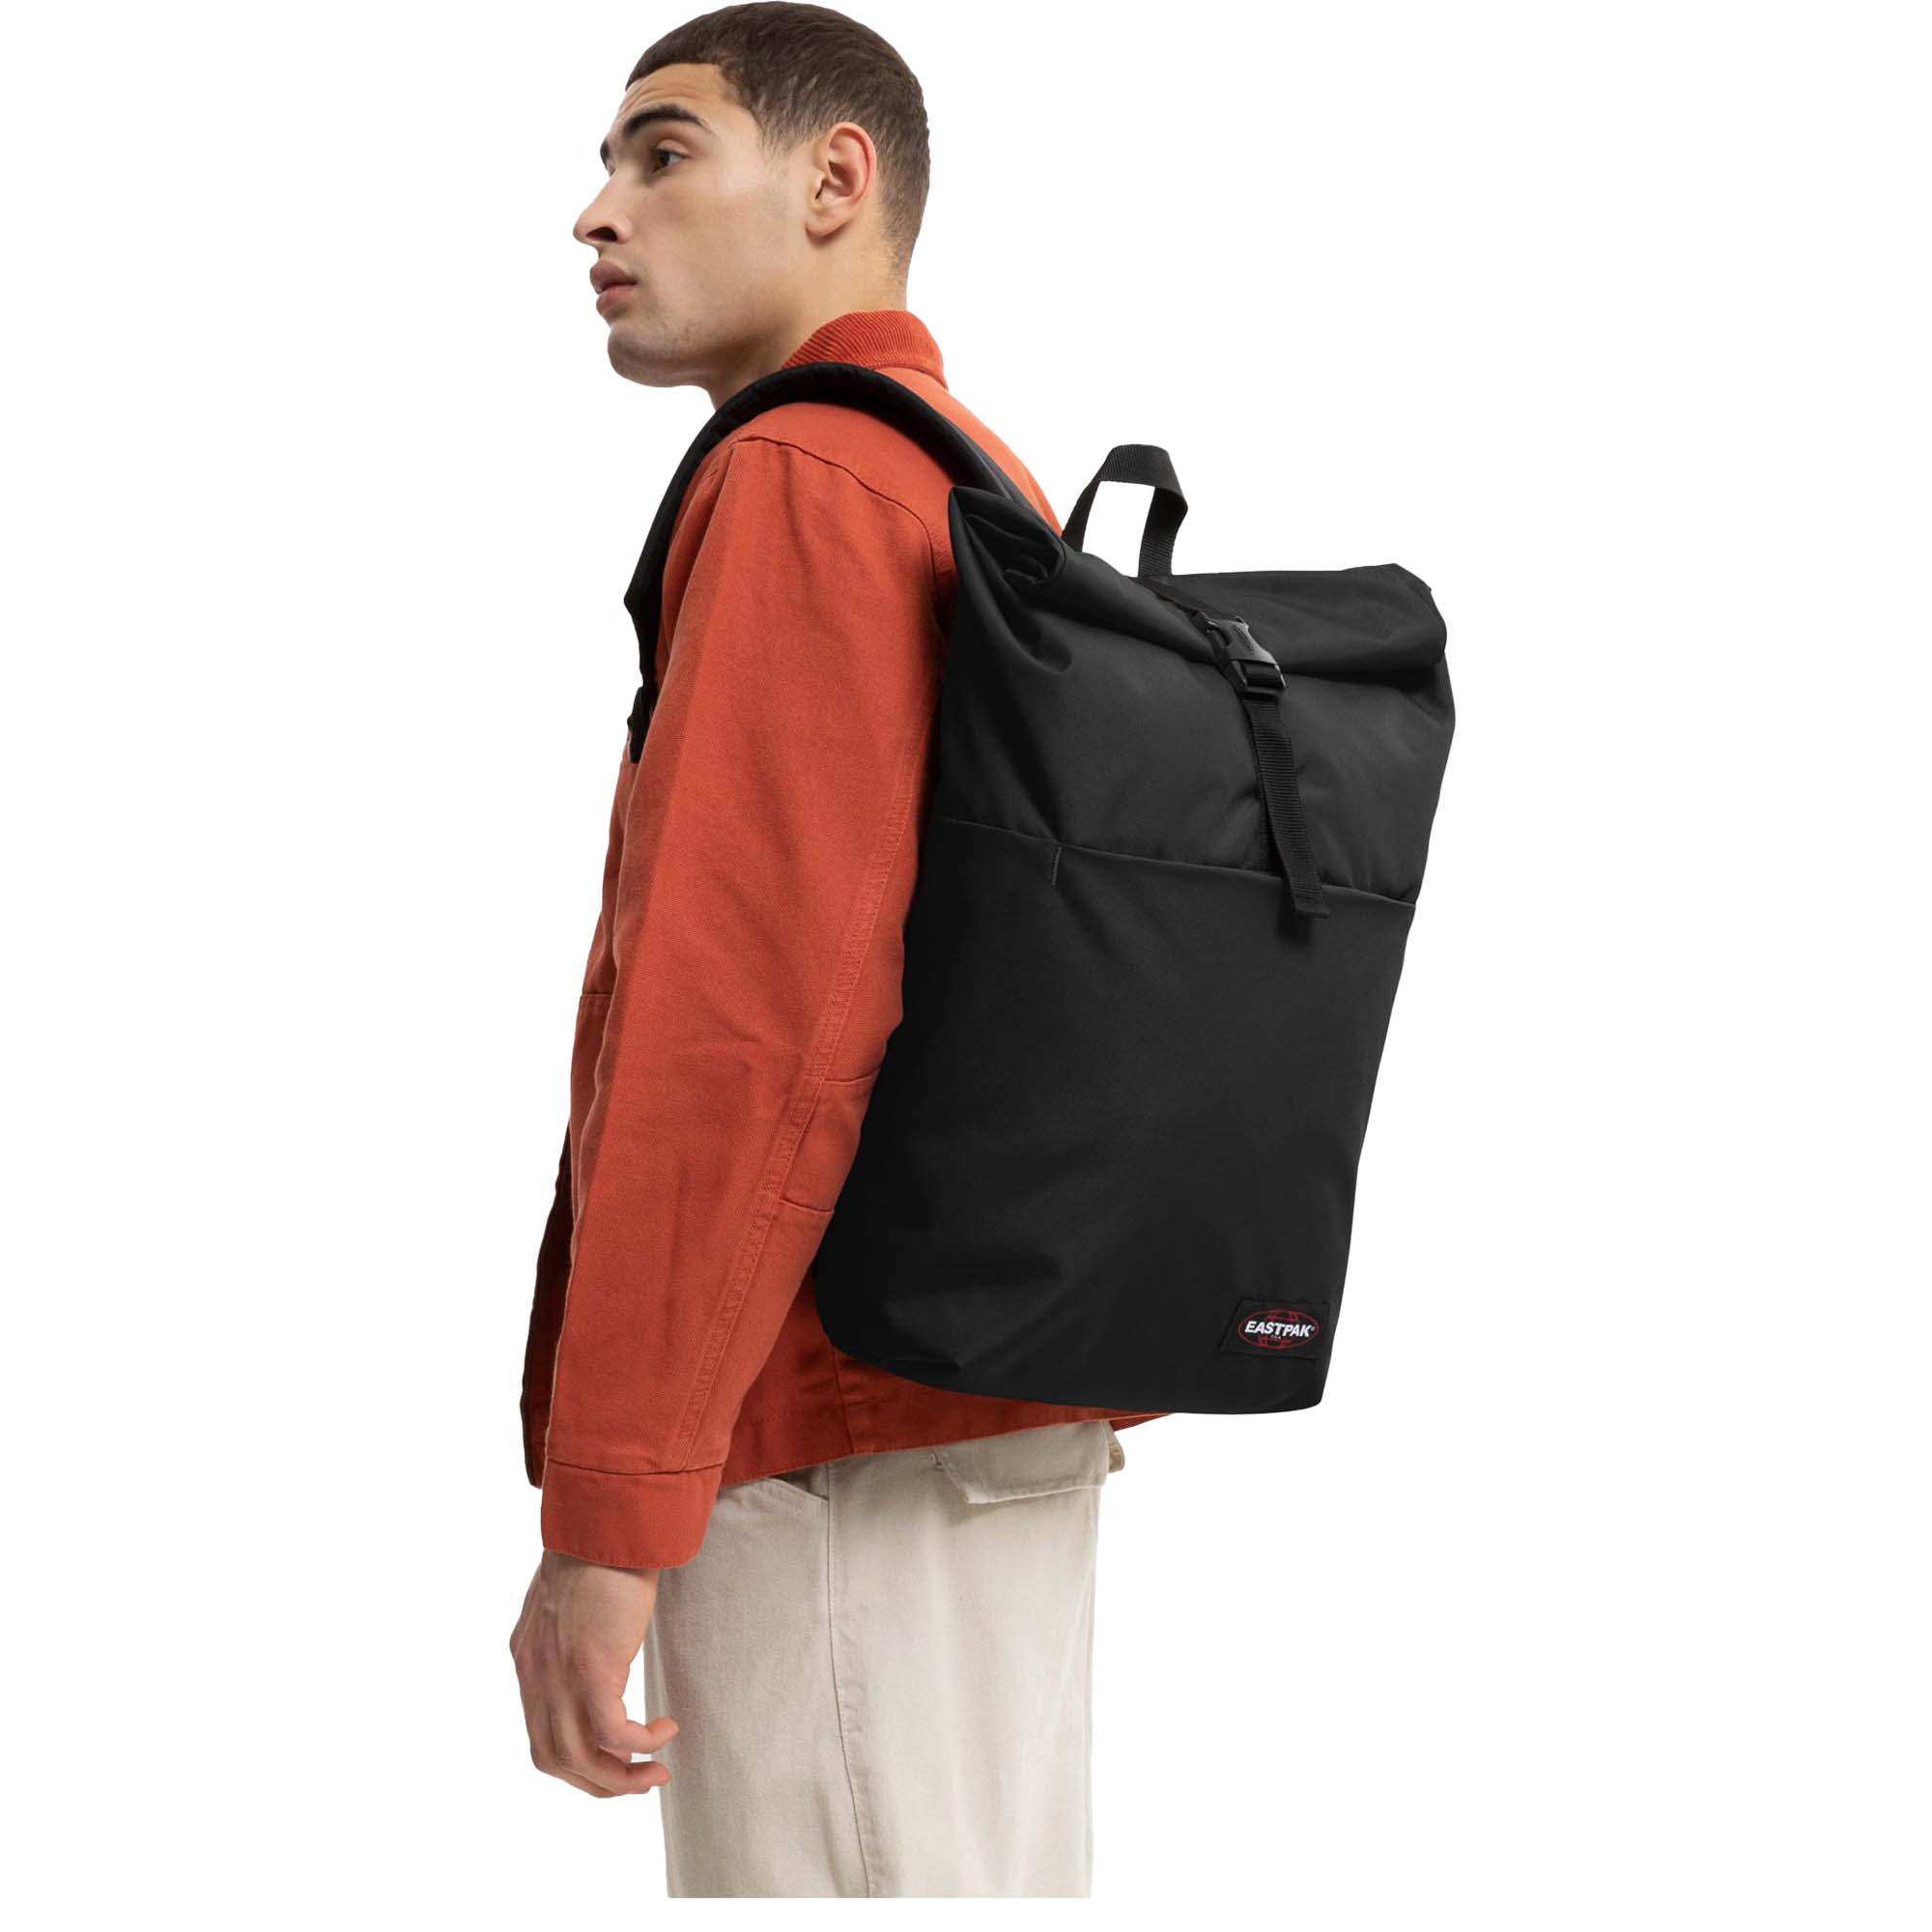 Eastpak Up Roll 23 Top Loading Backpack